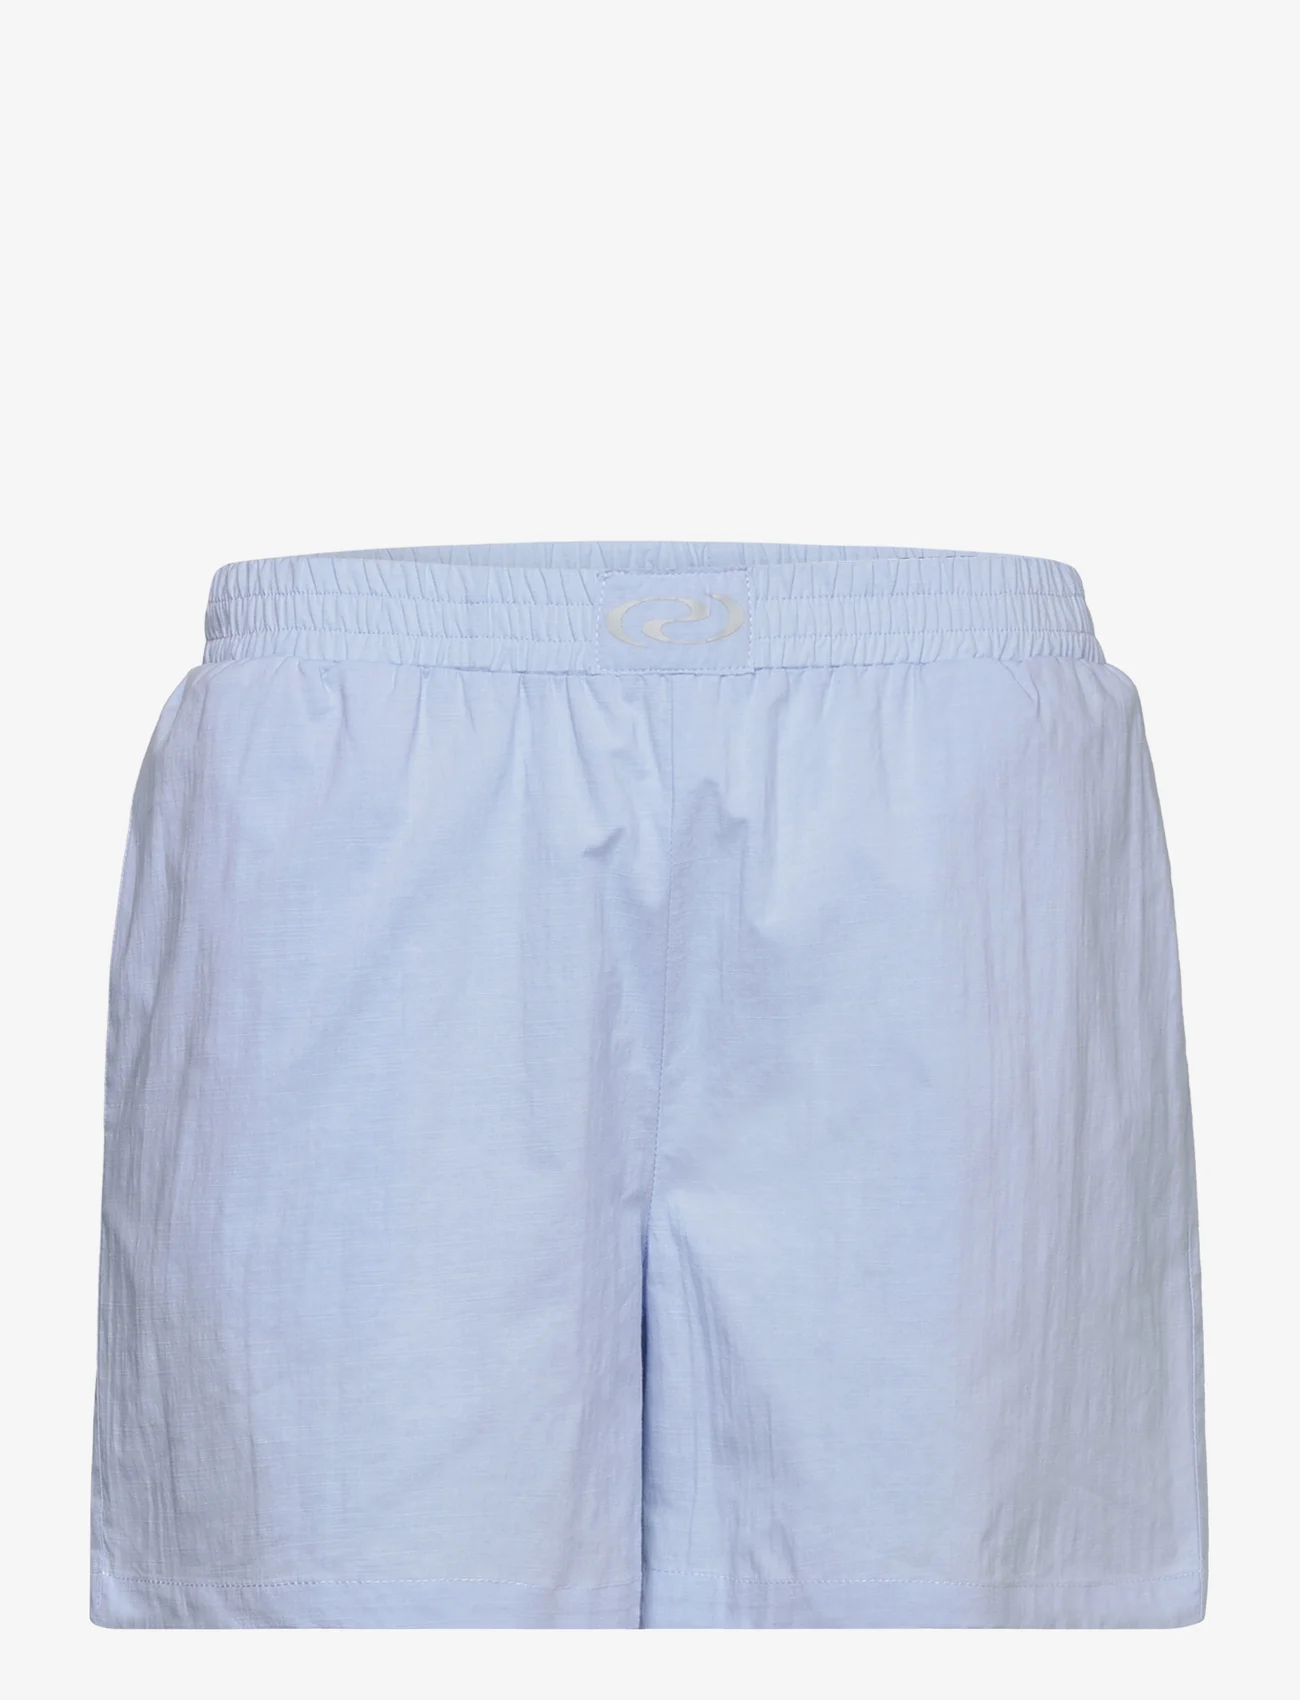 Résumé - RiveRS Shorts - casual shorts - light blue - 0